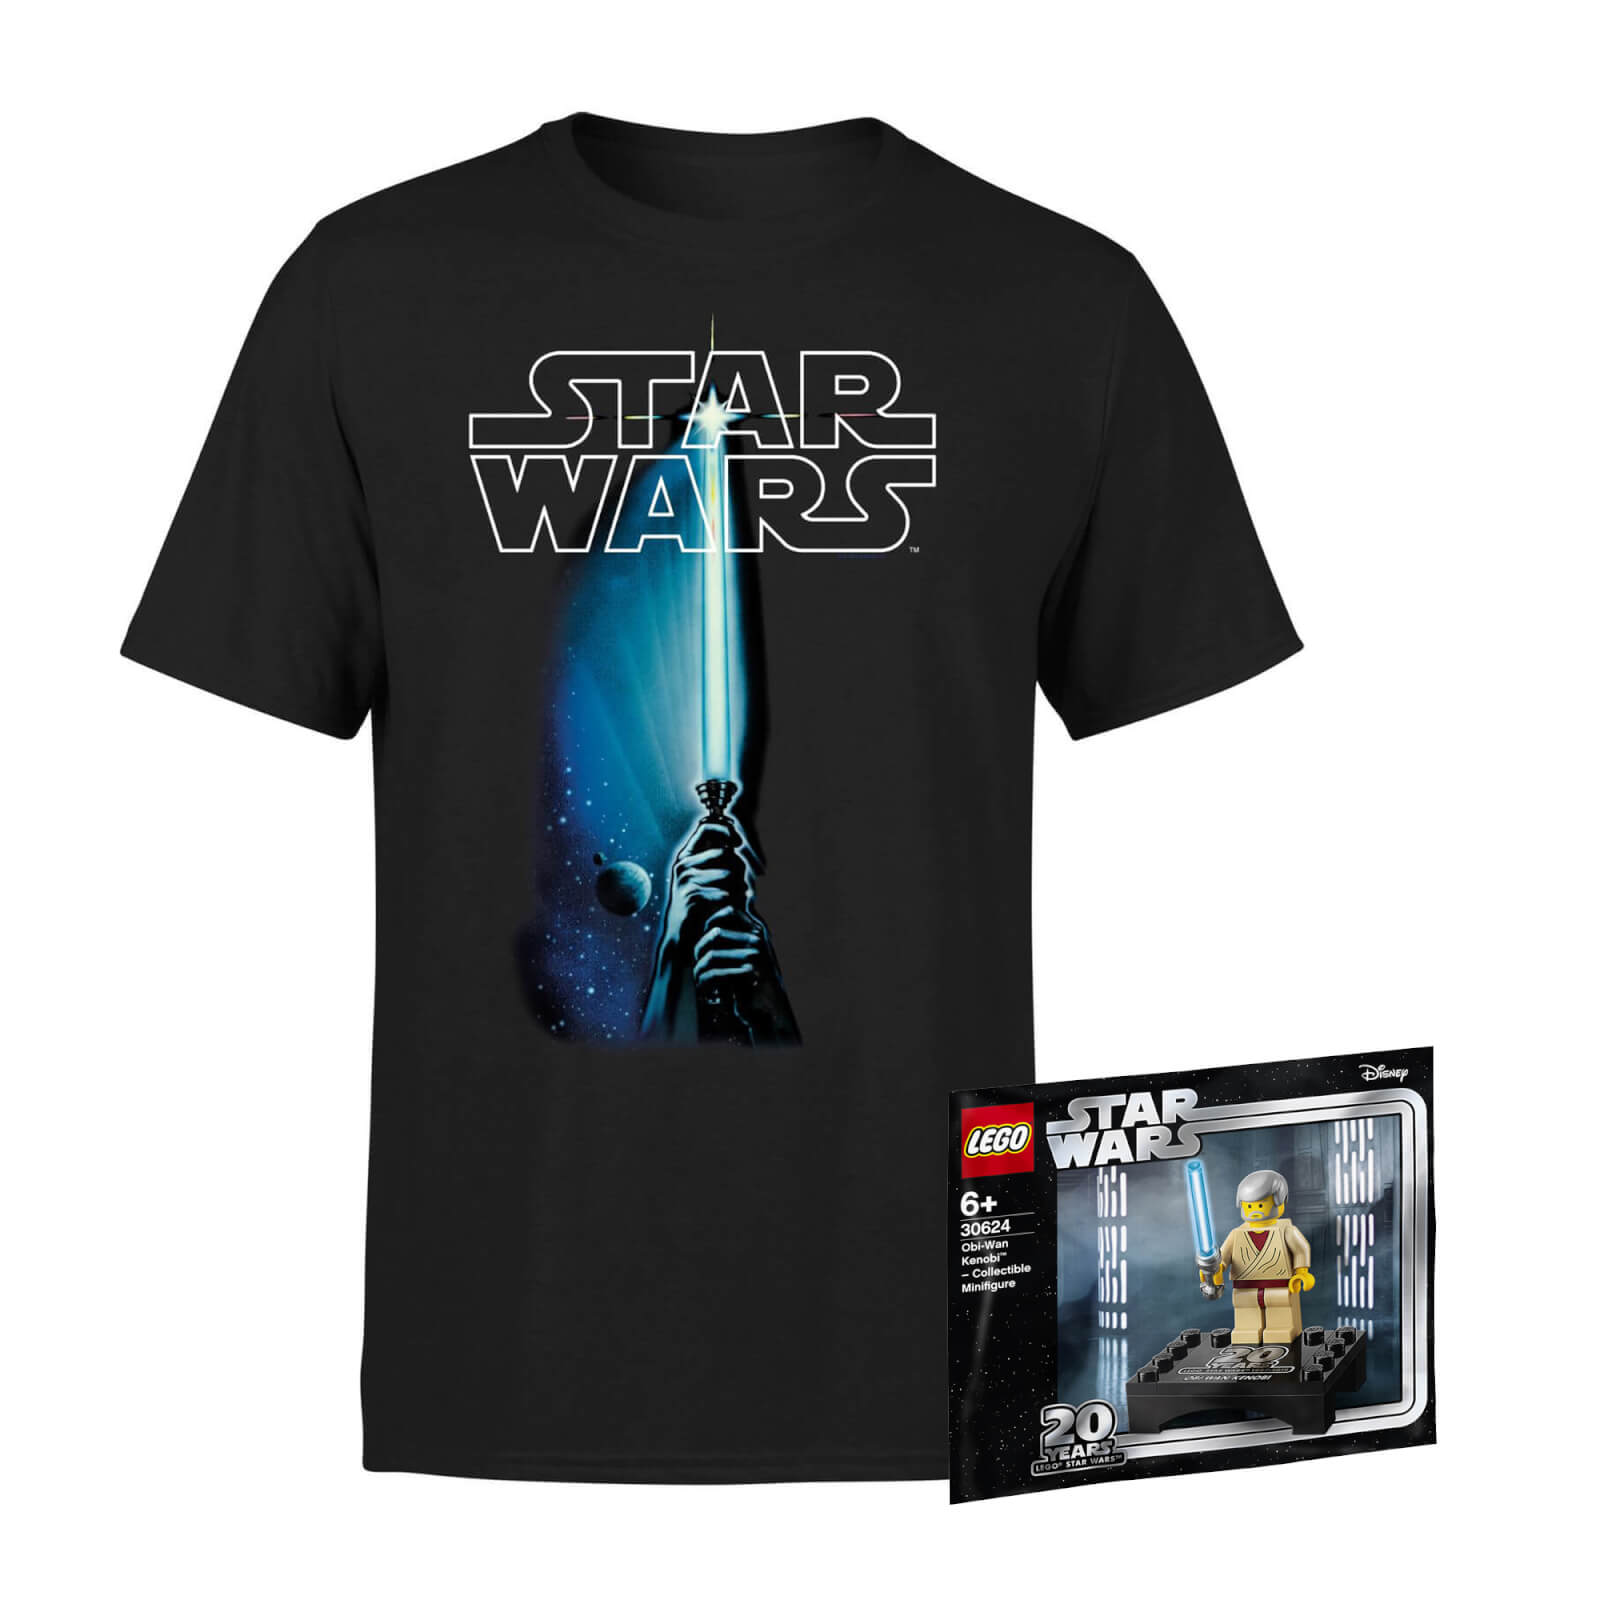 Star Wars Tee & LEGO Minifigure Bundle - Kids' - 5-6 Years von Star Wars